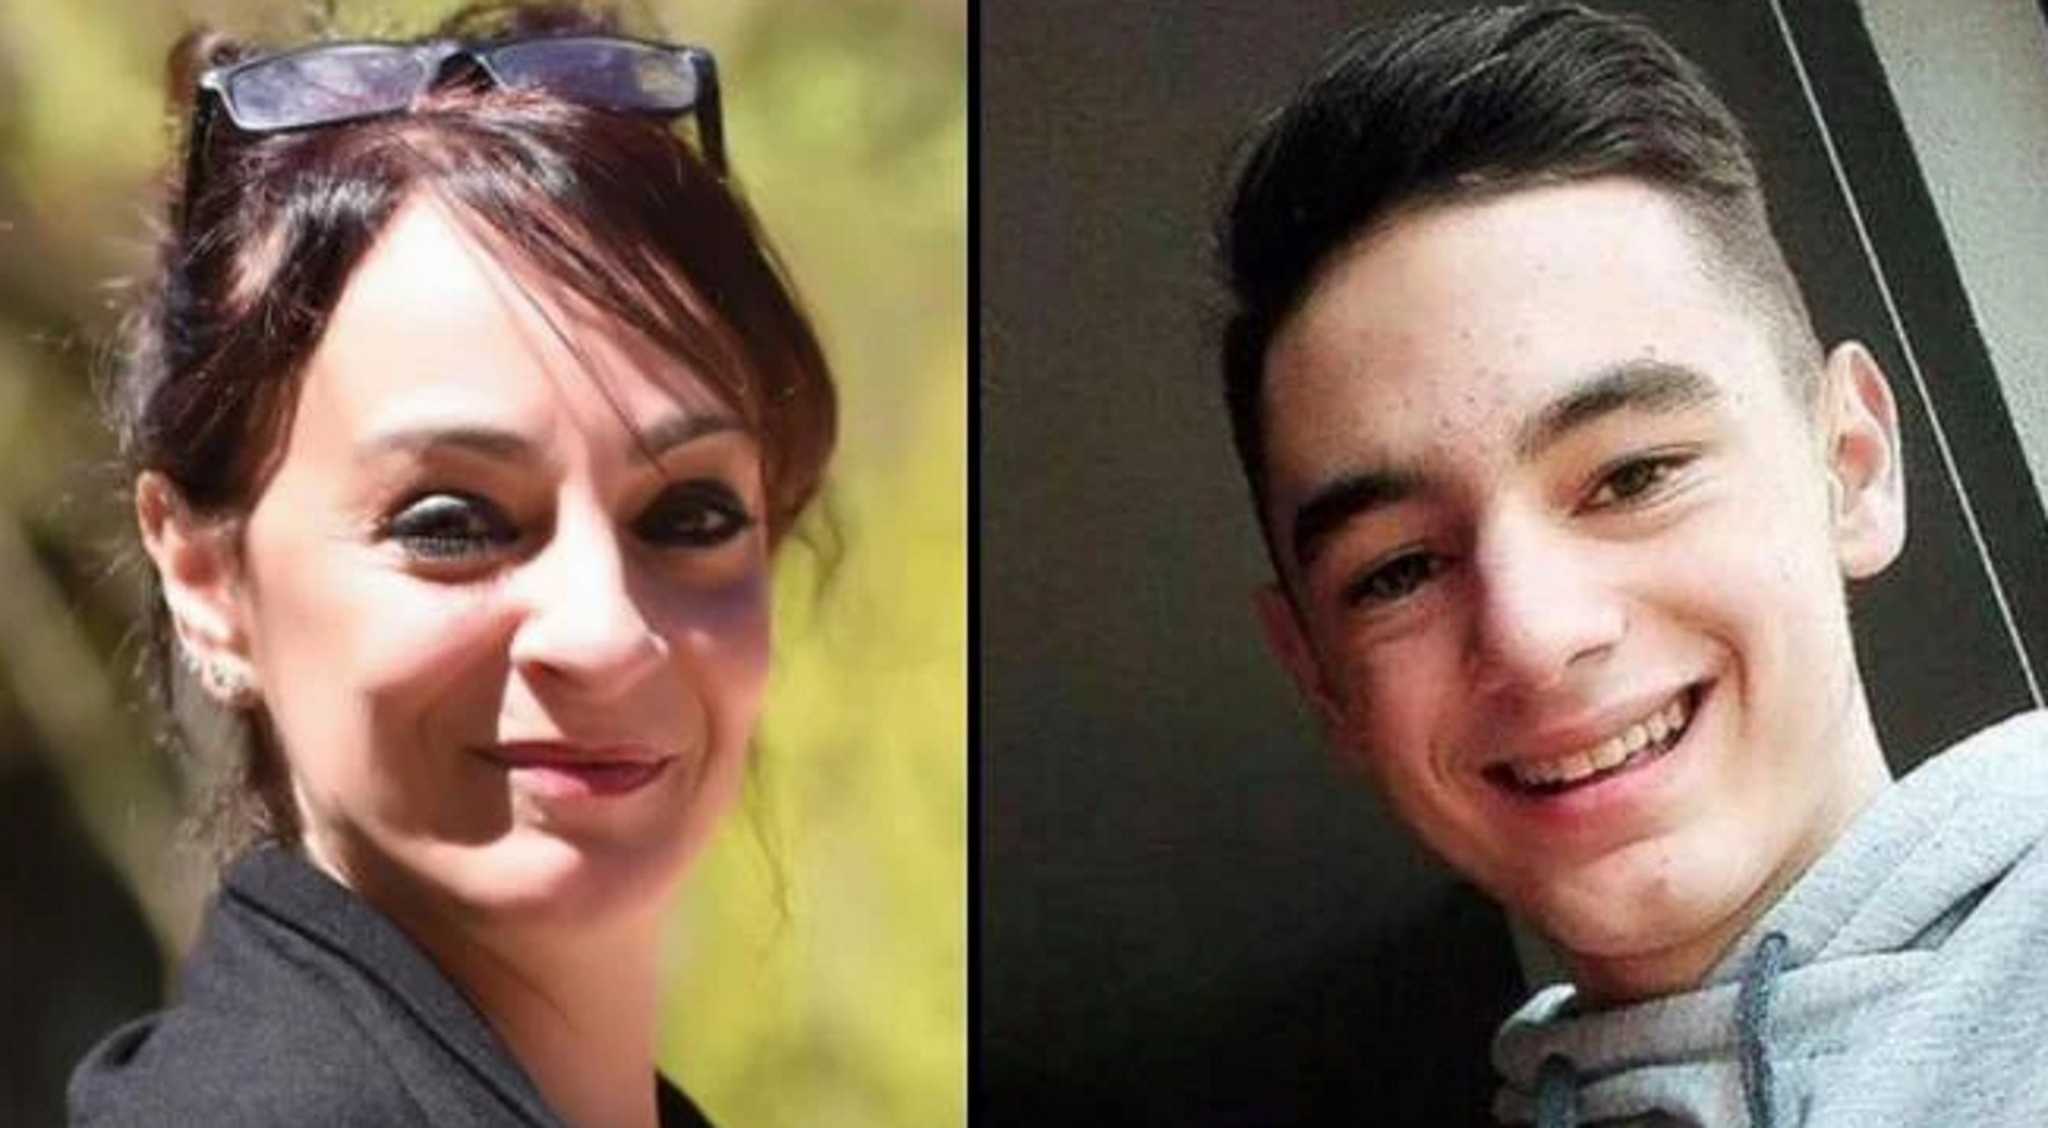 Σοκαριστική υπόθεση στην Ιταλία: Πώς λες σε μία μητέρα που ξύπνησε από κώμα πως ο γιος της δολοφονήθηκε από τον πρώην της;